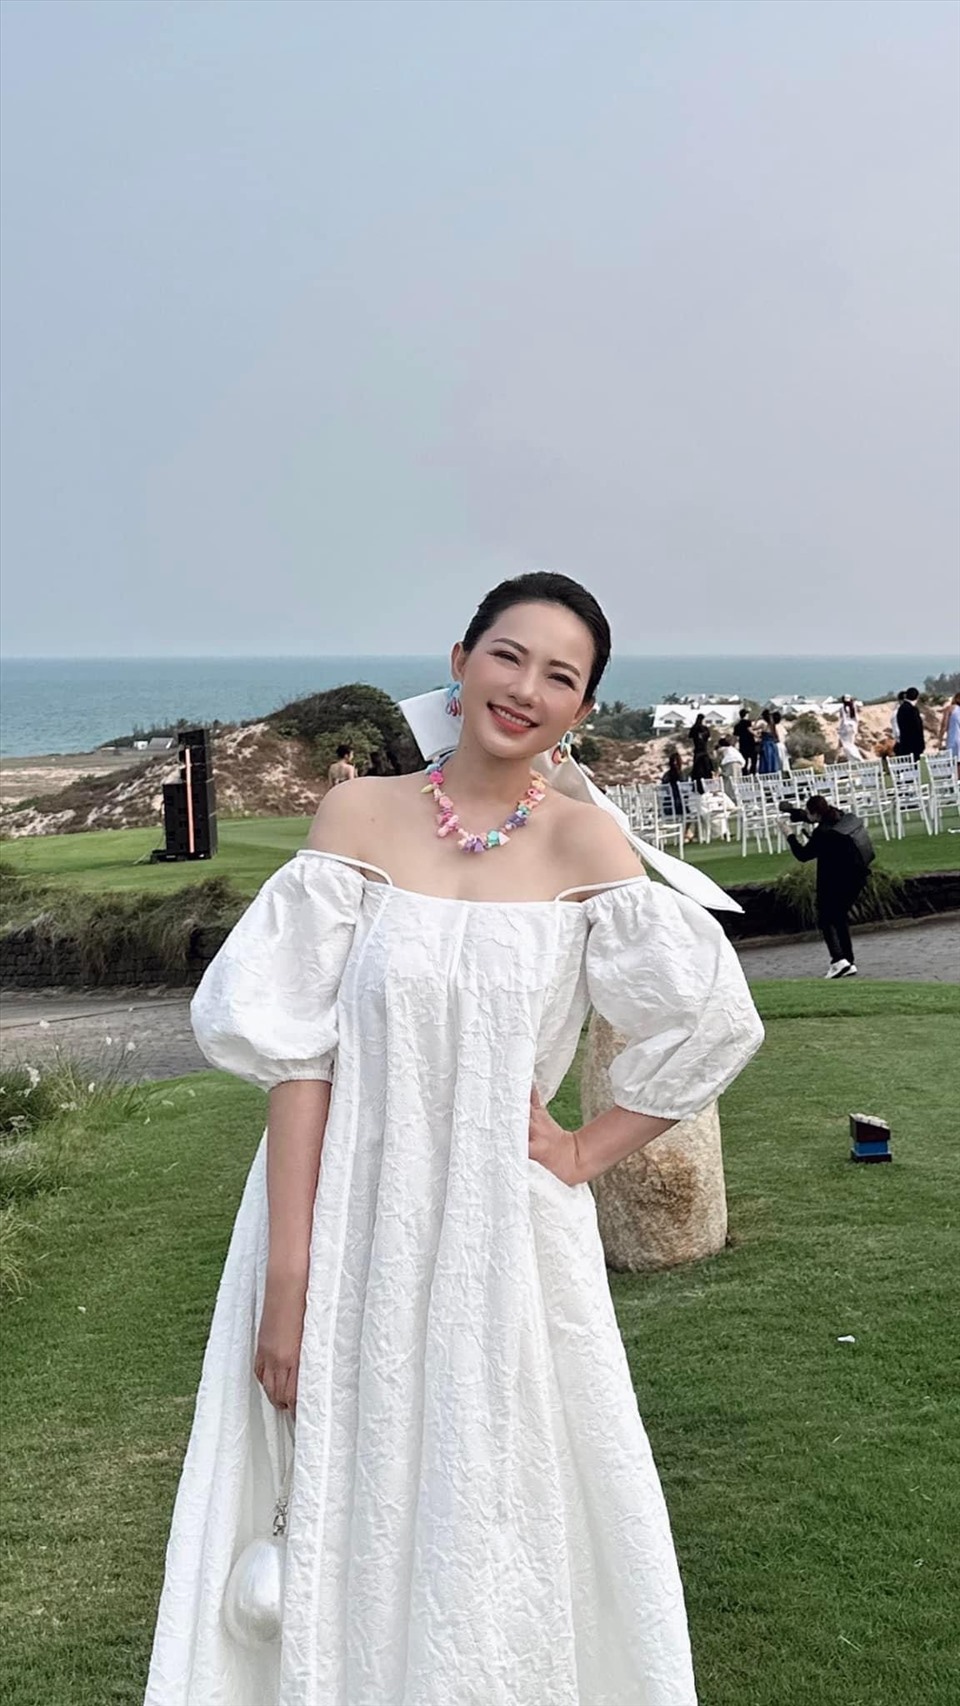 Phan Như Thảo dự show thời trang của Adrian Anh Tuấn 13.4 ở Bà Rịa - Vũng Tàu. Ảnh: Facebook nhân vật